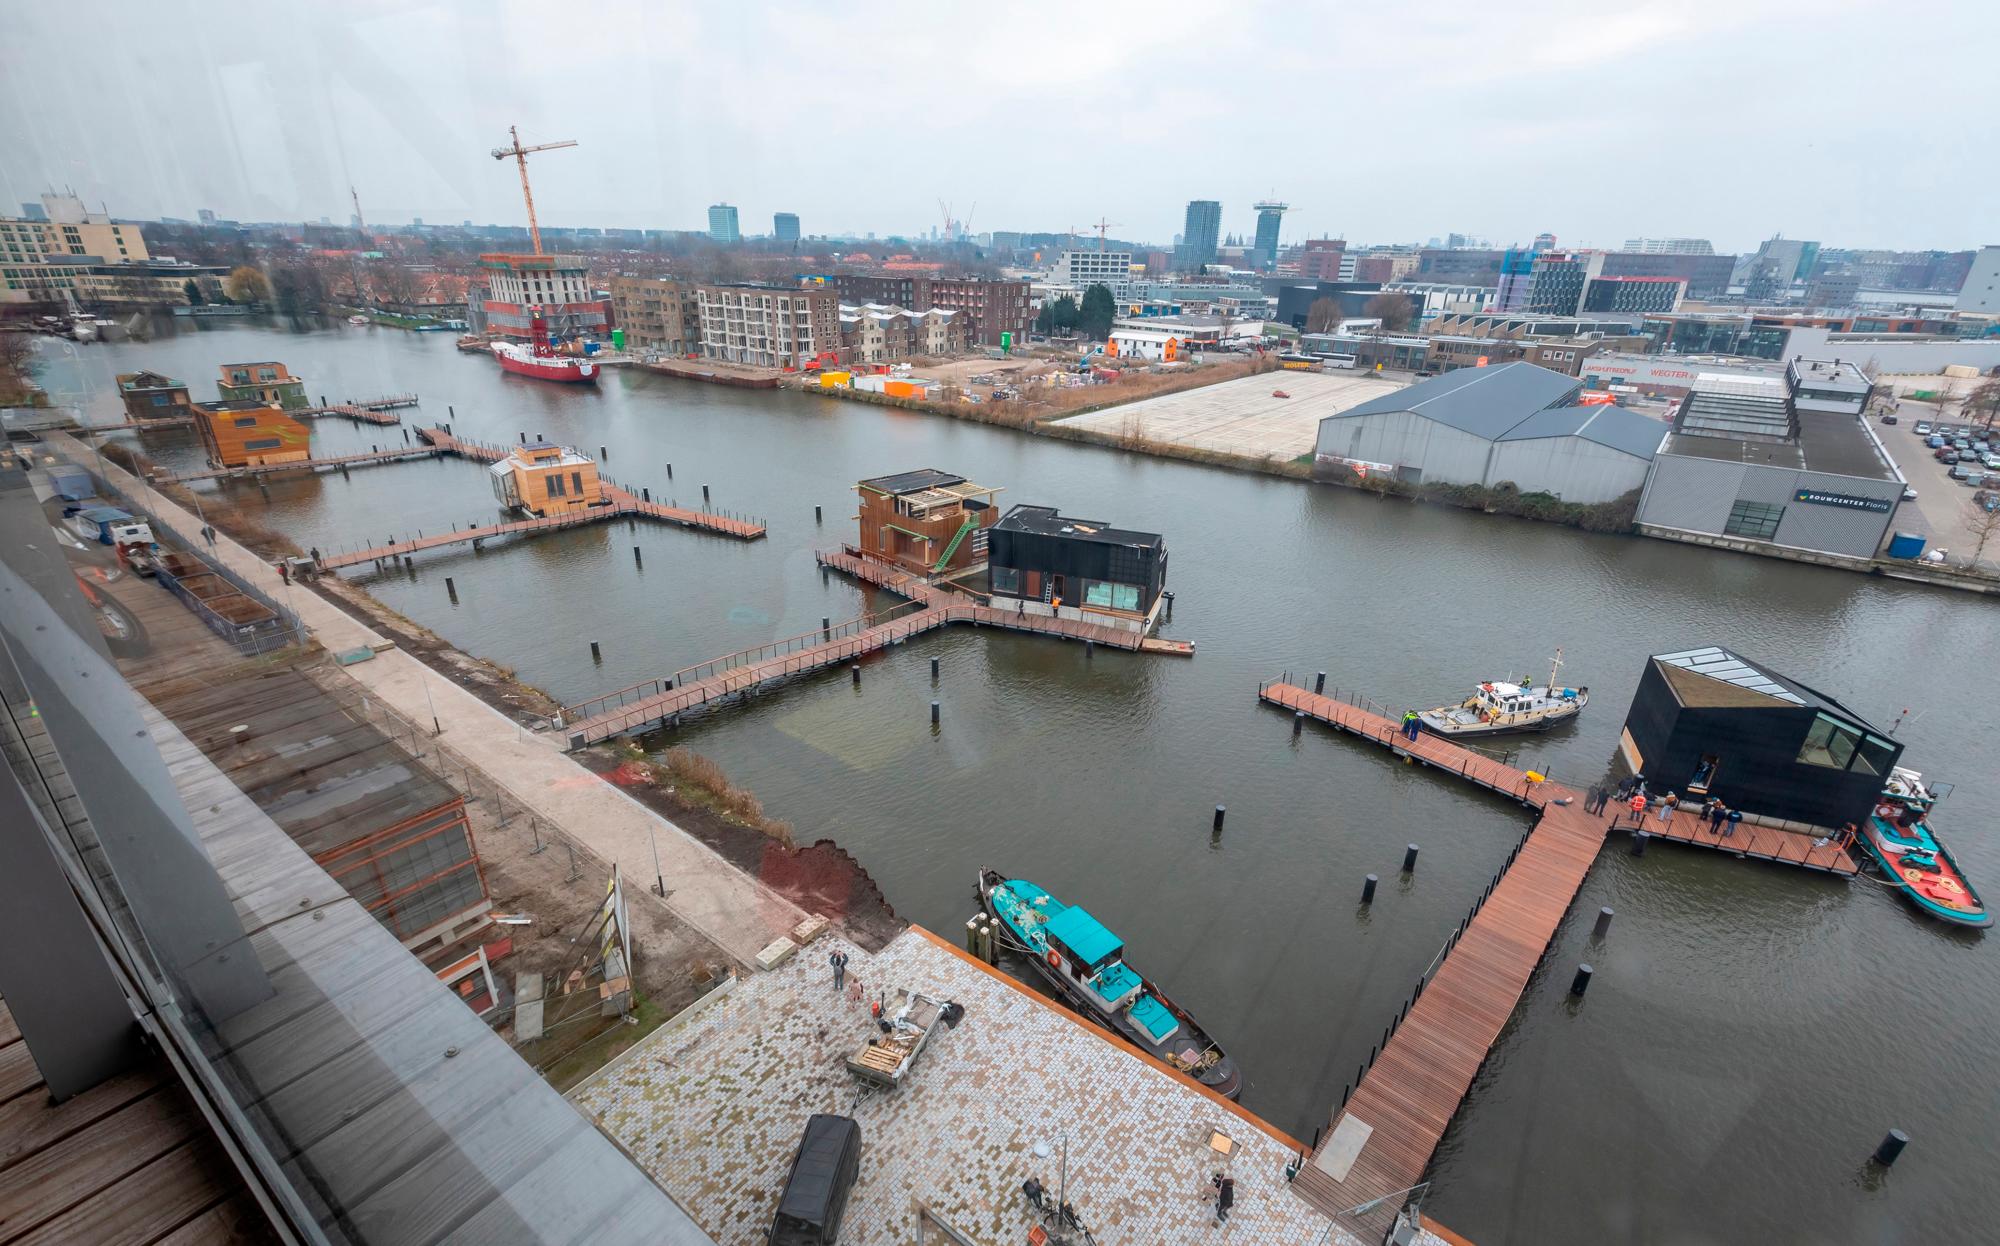 Imagen del barrio y cómo van quedando las casas flotantes de Amsterdam antes de su conclusión final en 2020.